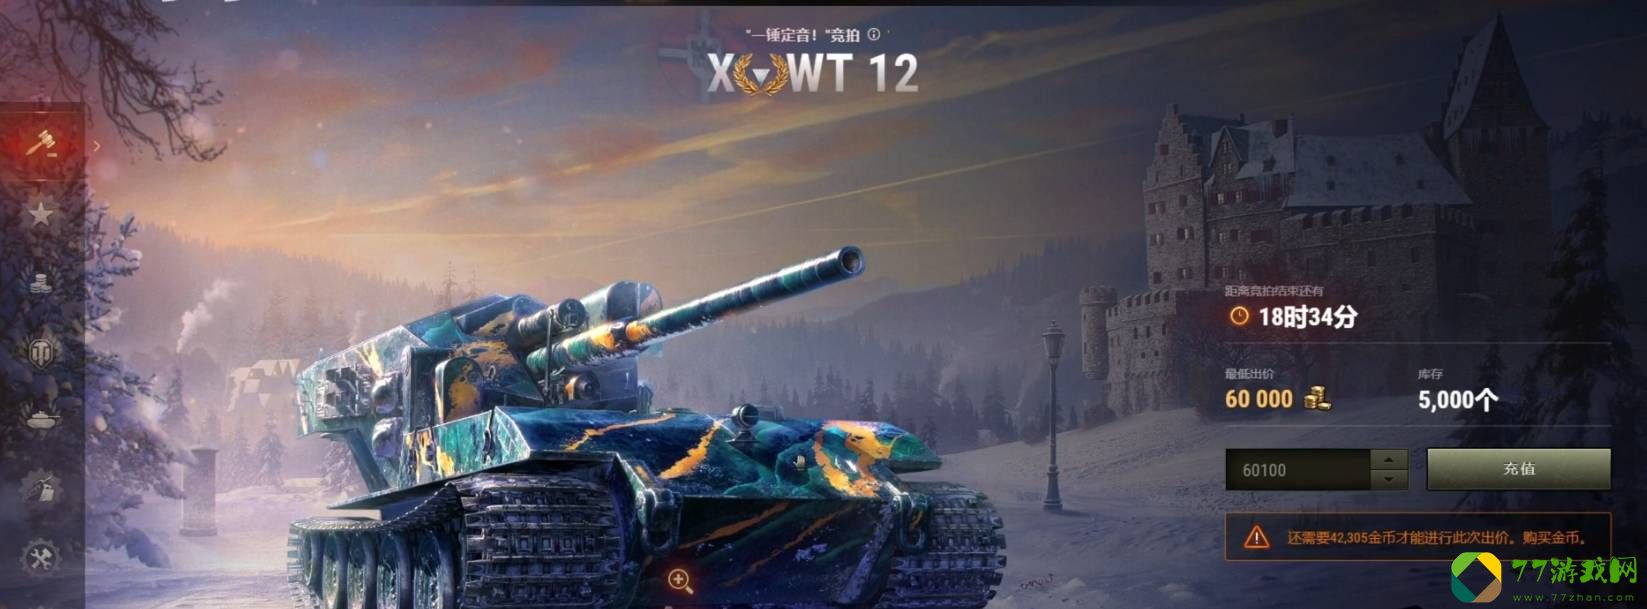 坦克世界wt100百运怎么获得?坦克世界wt100百运获得攻略截图